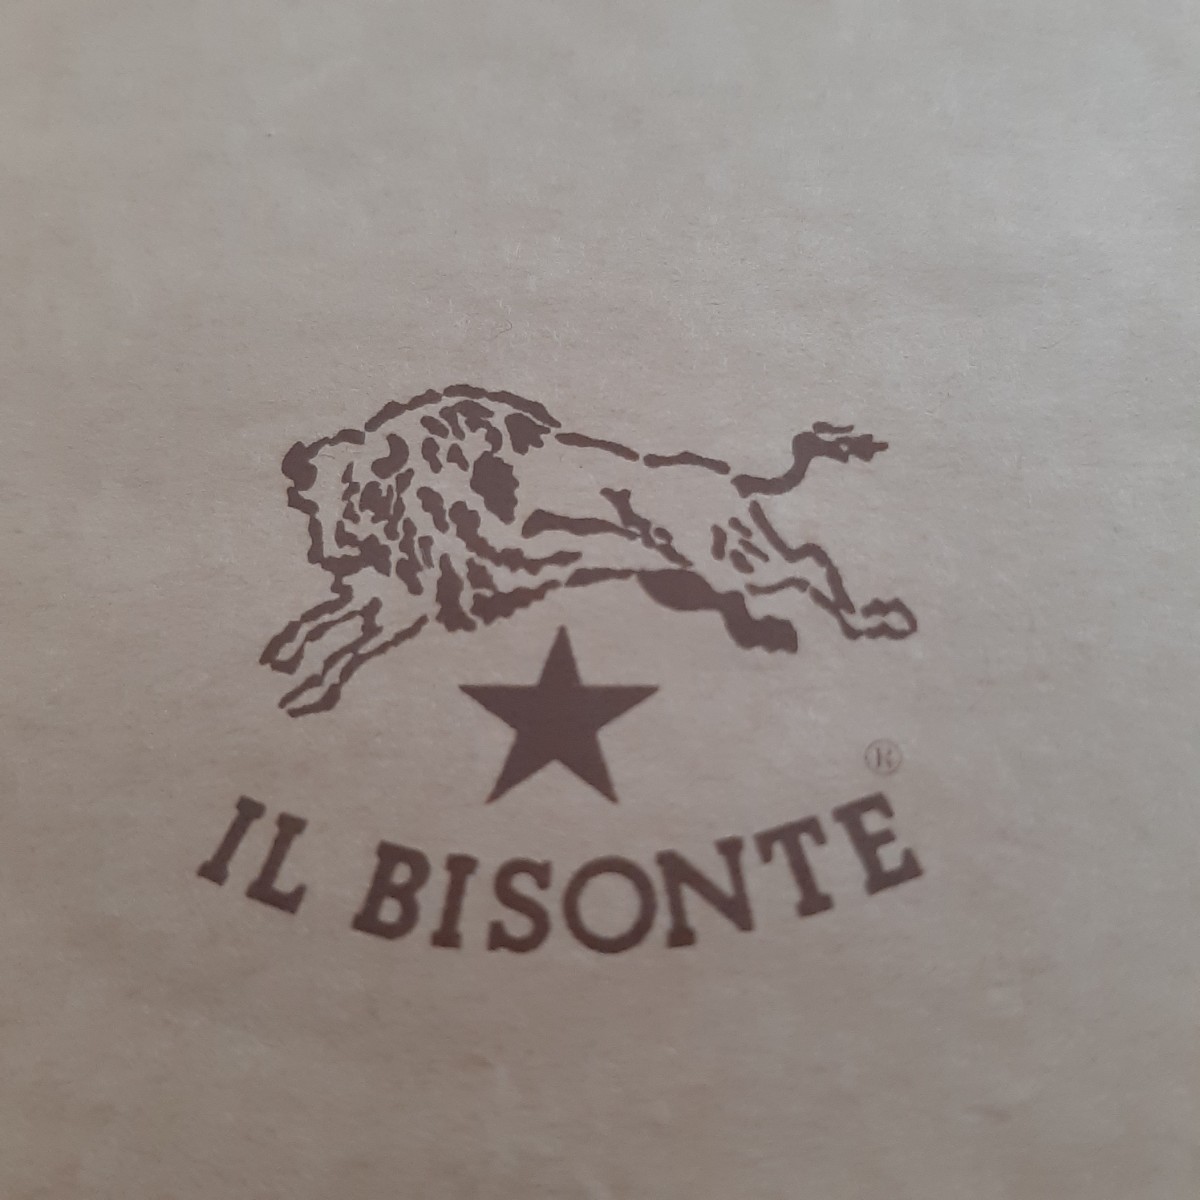 【未使用品】IL BISONTE  鉛筆   FIRENZE   MADE IN ITALY+封筒 セット  イルビゾンテ